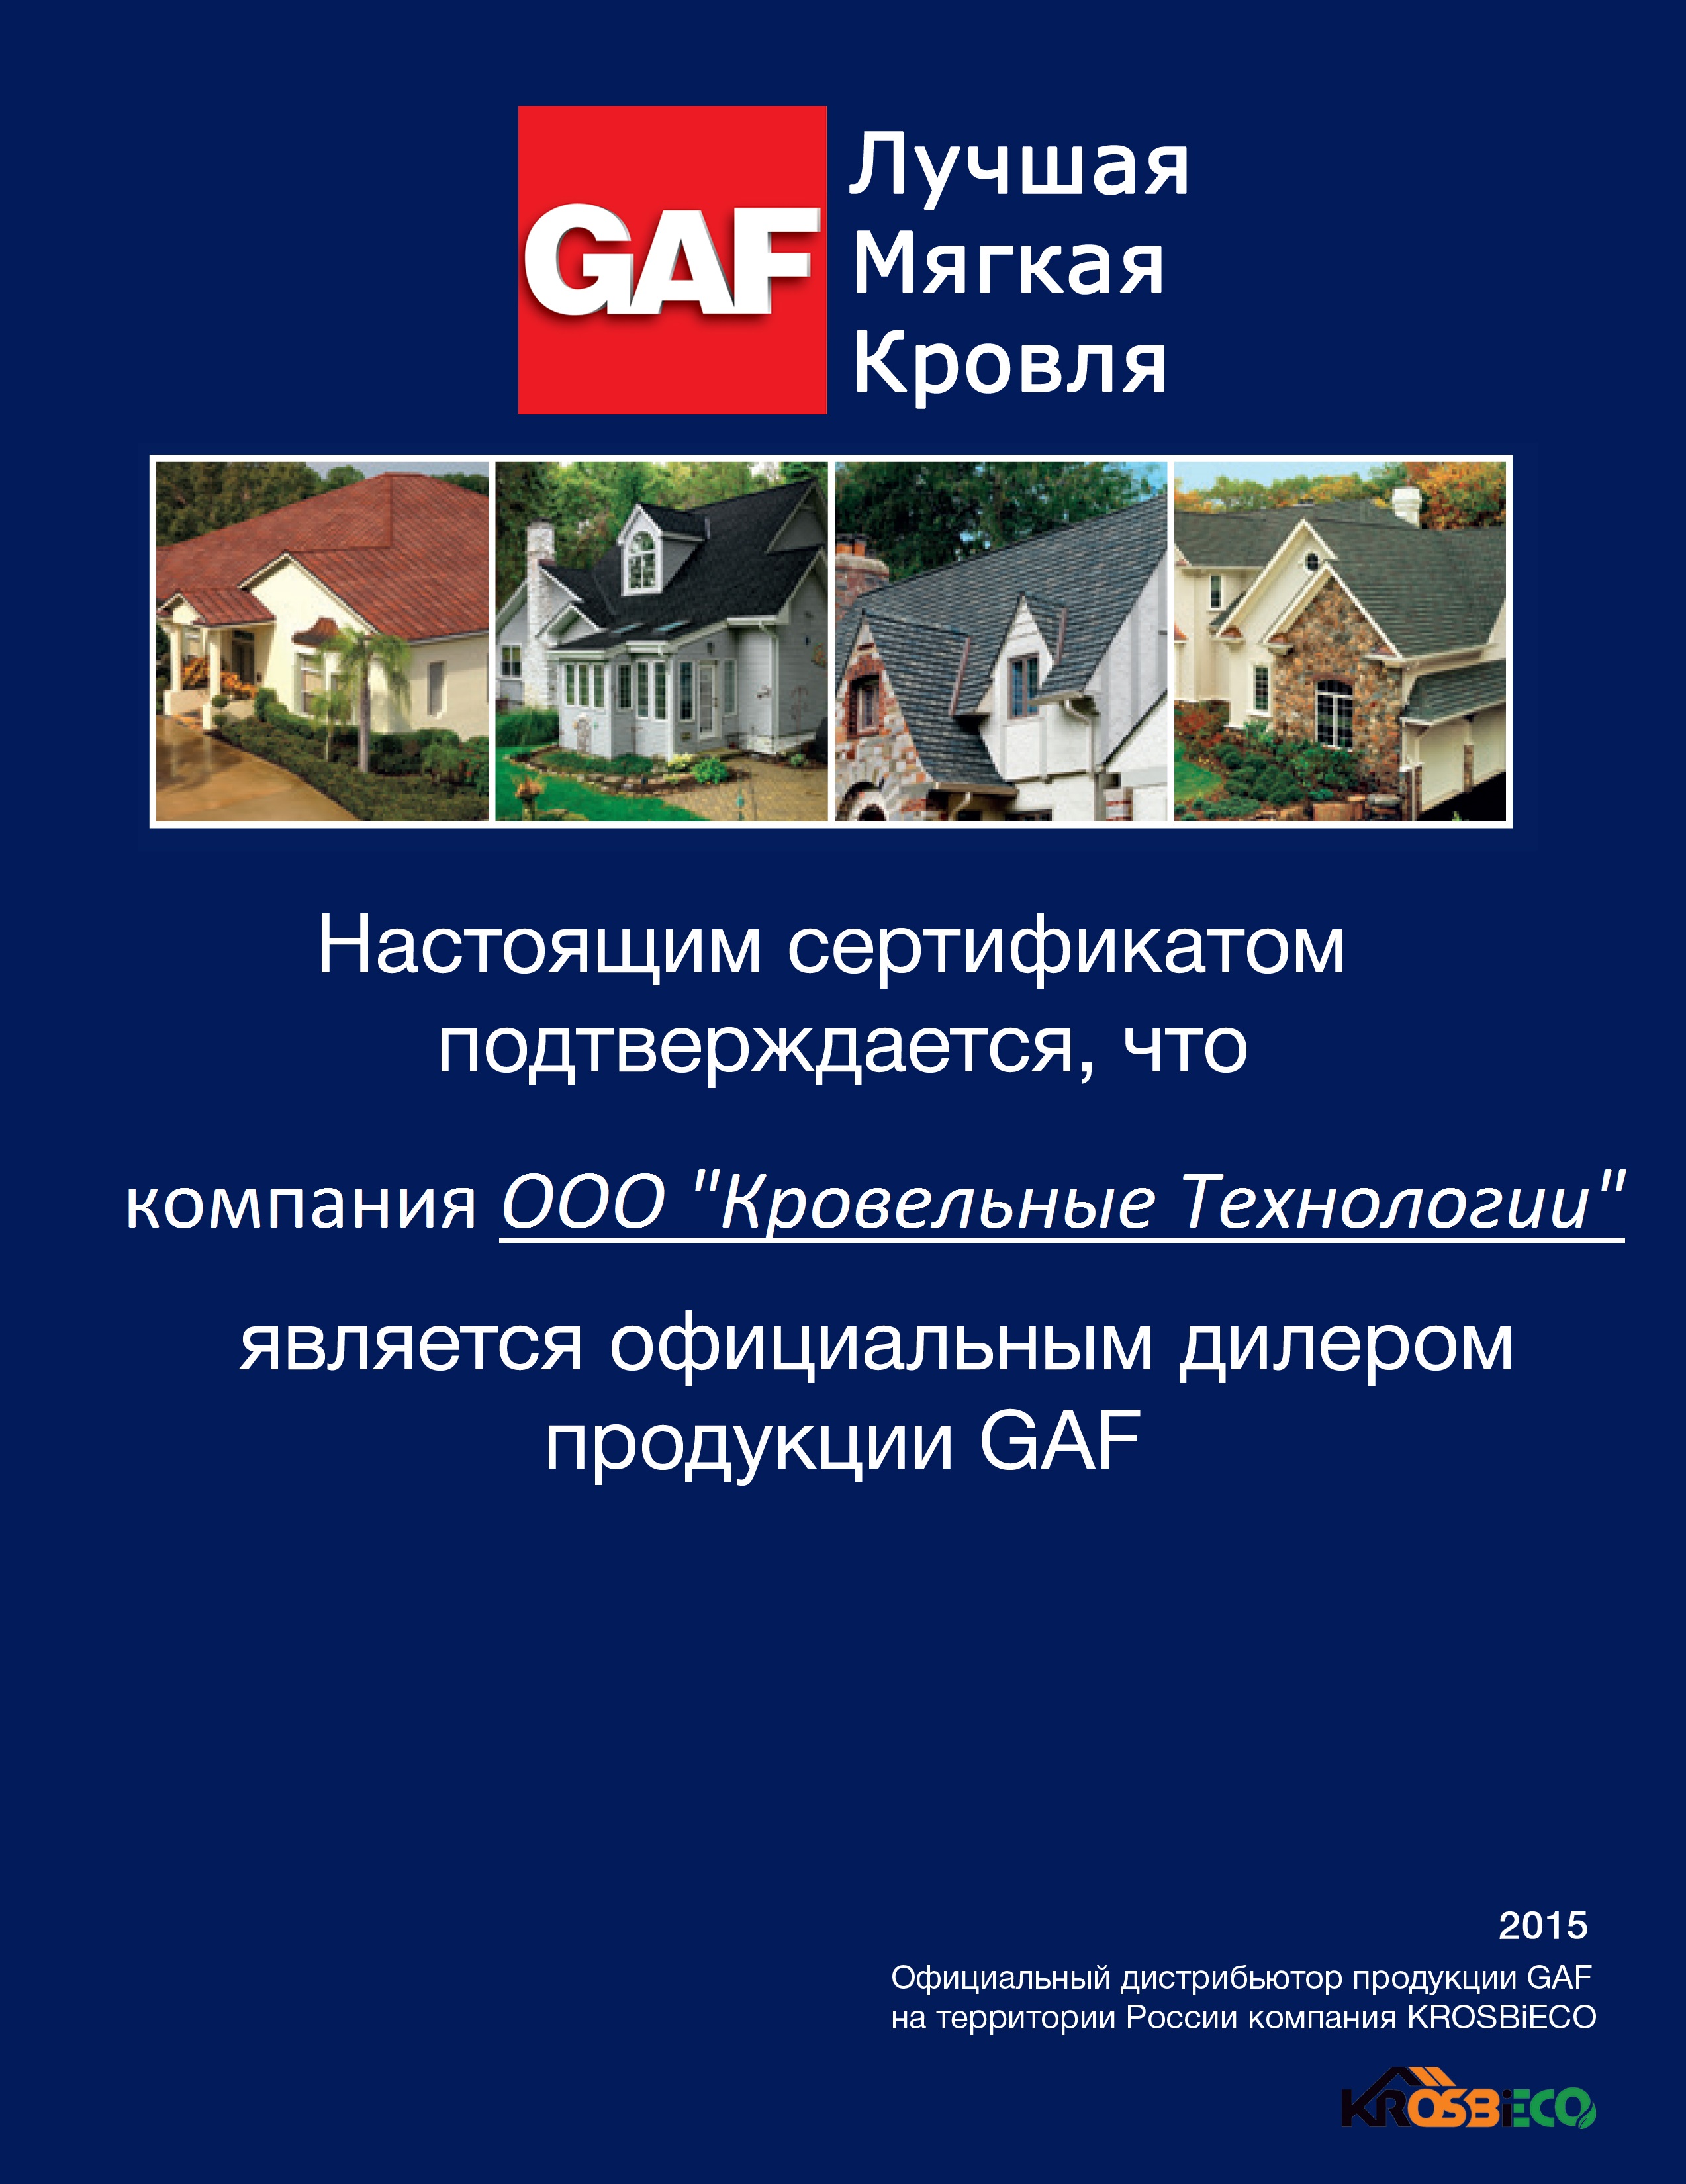 Дилерский сертификат GAF для компании КРОВПРО